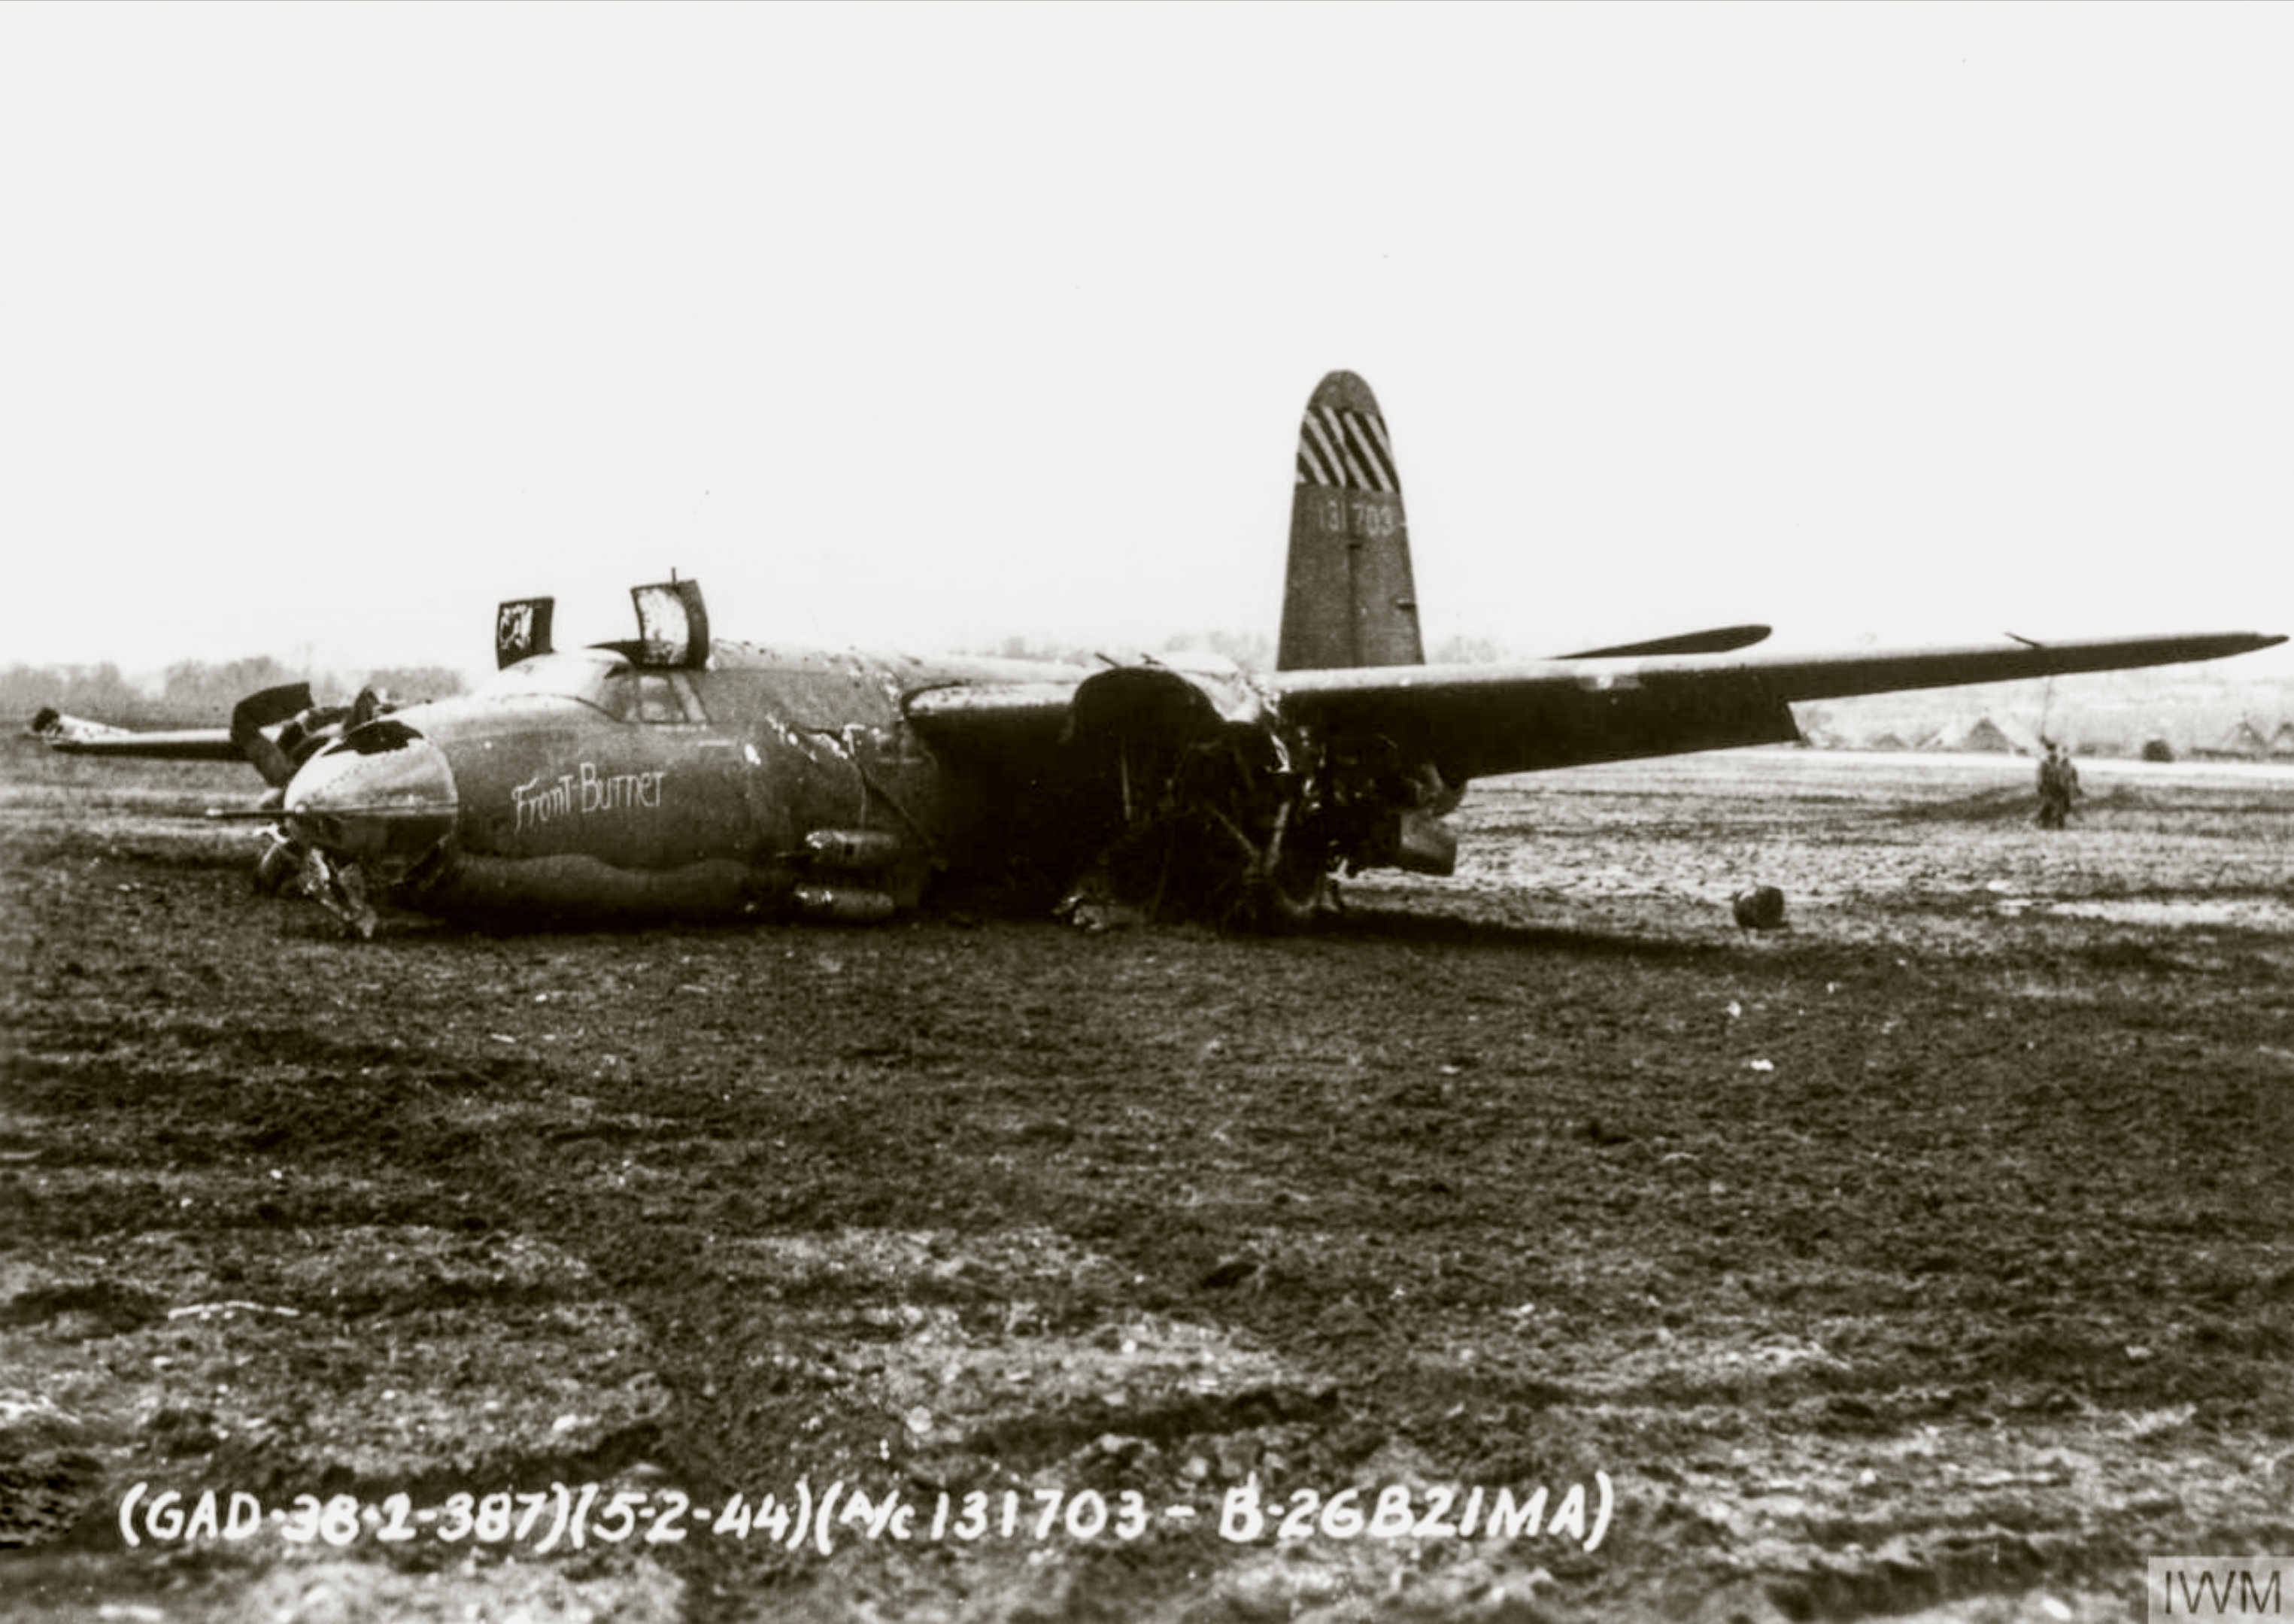 41 31703 B 26B Marauder 8AF 387BG559BS TQF Front Burner belly in after flak damage 5th Feb 1944 FRE8607